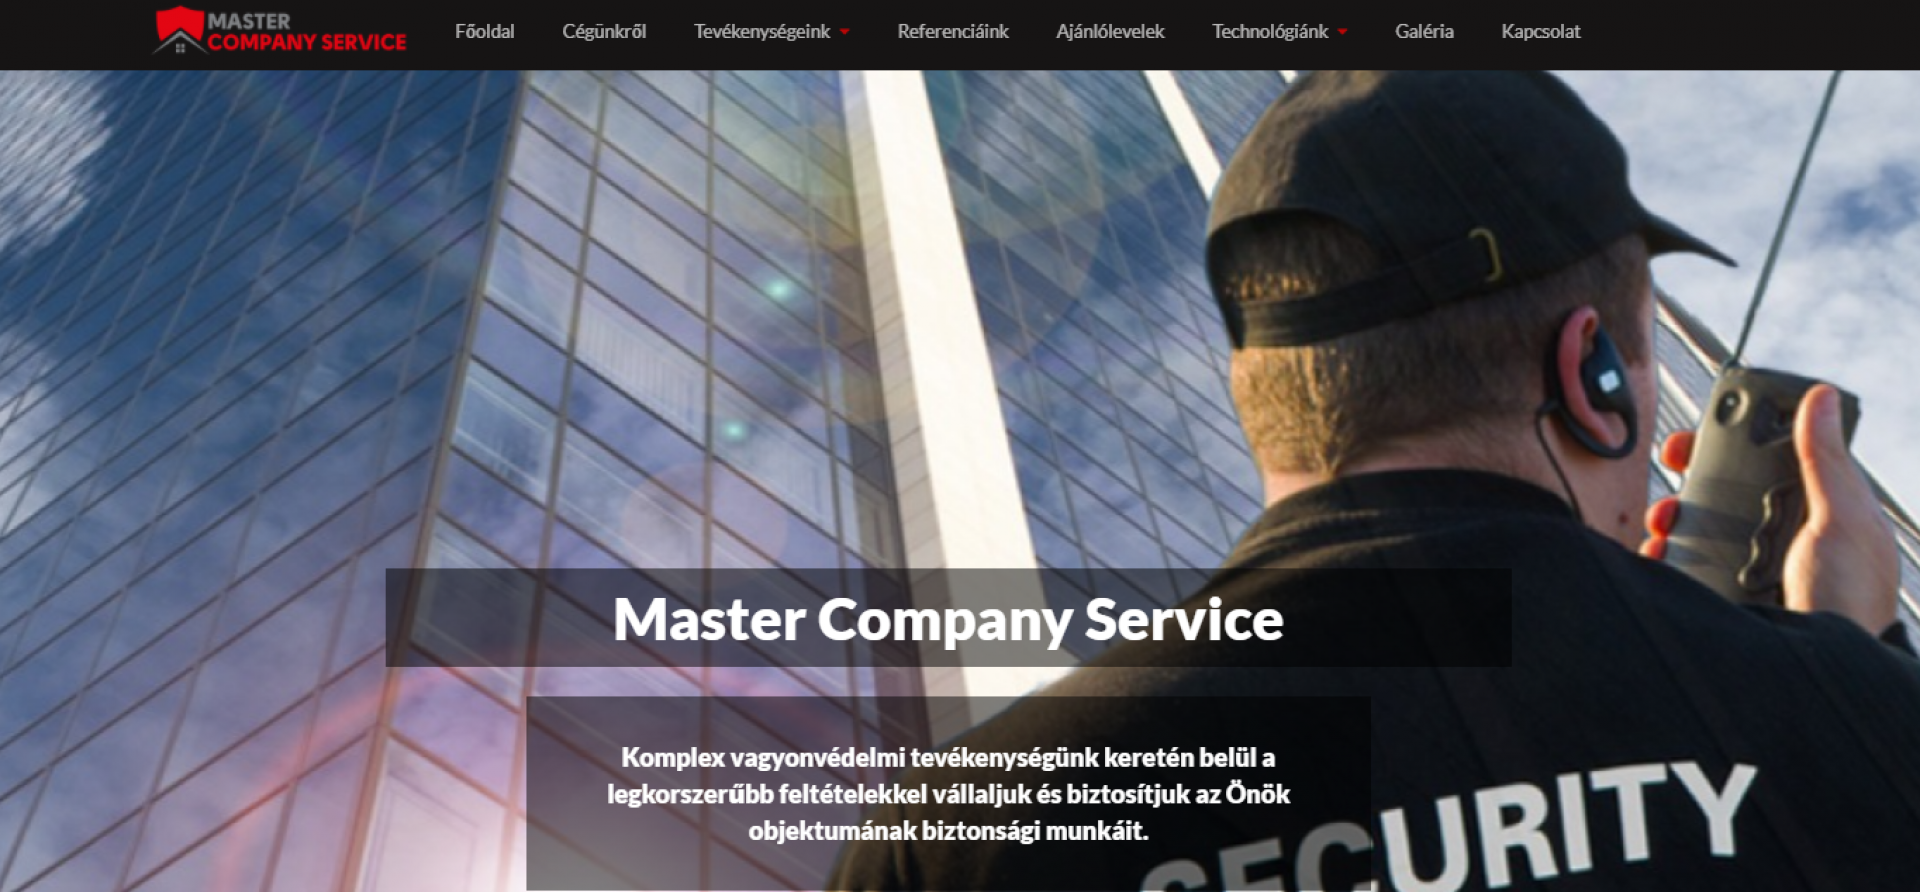 Master Company Service